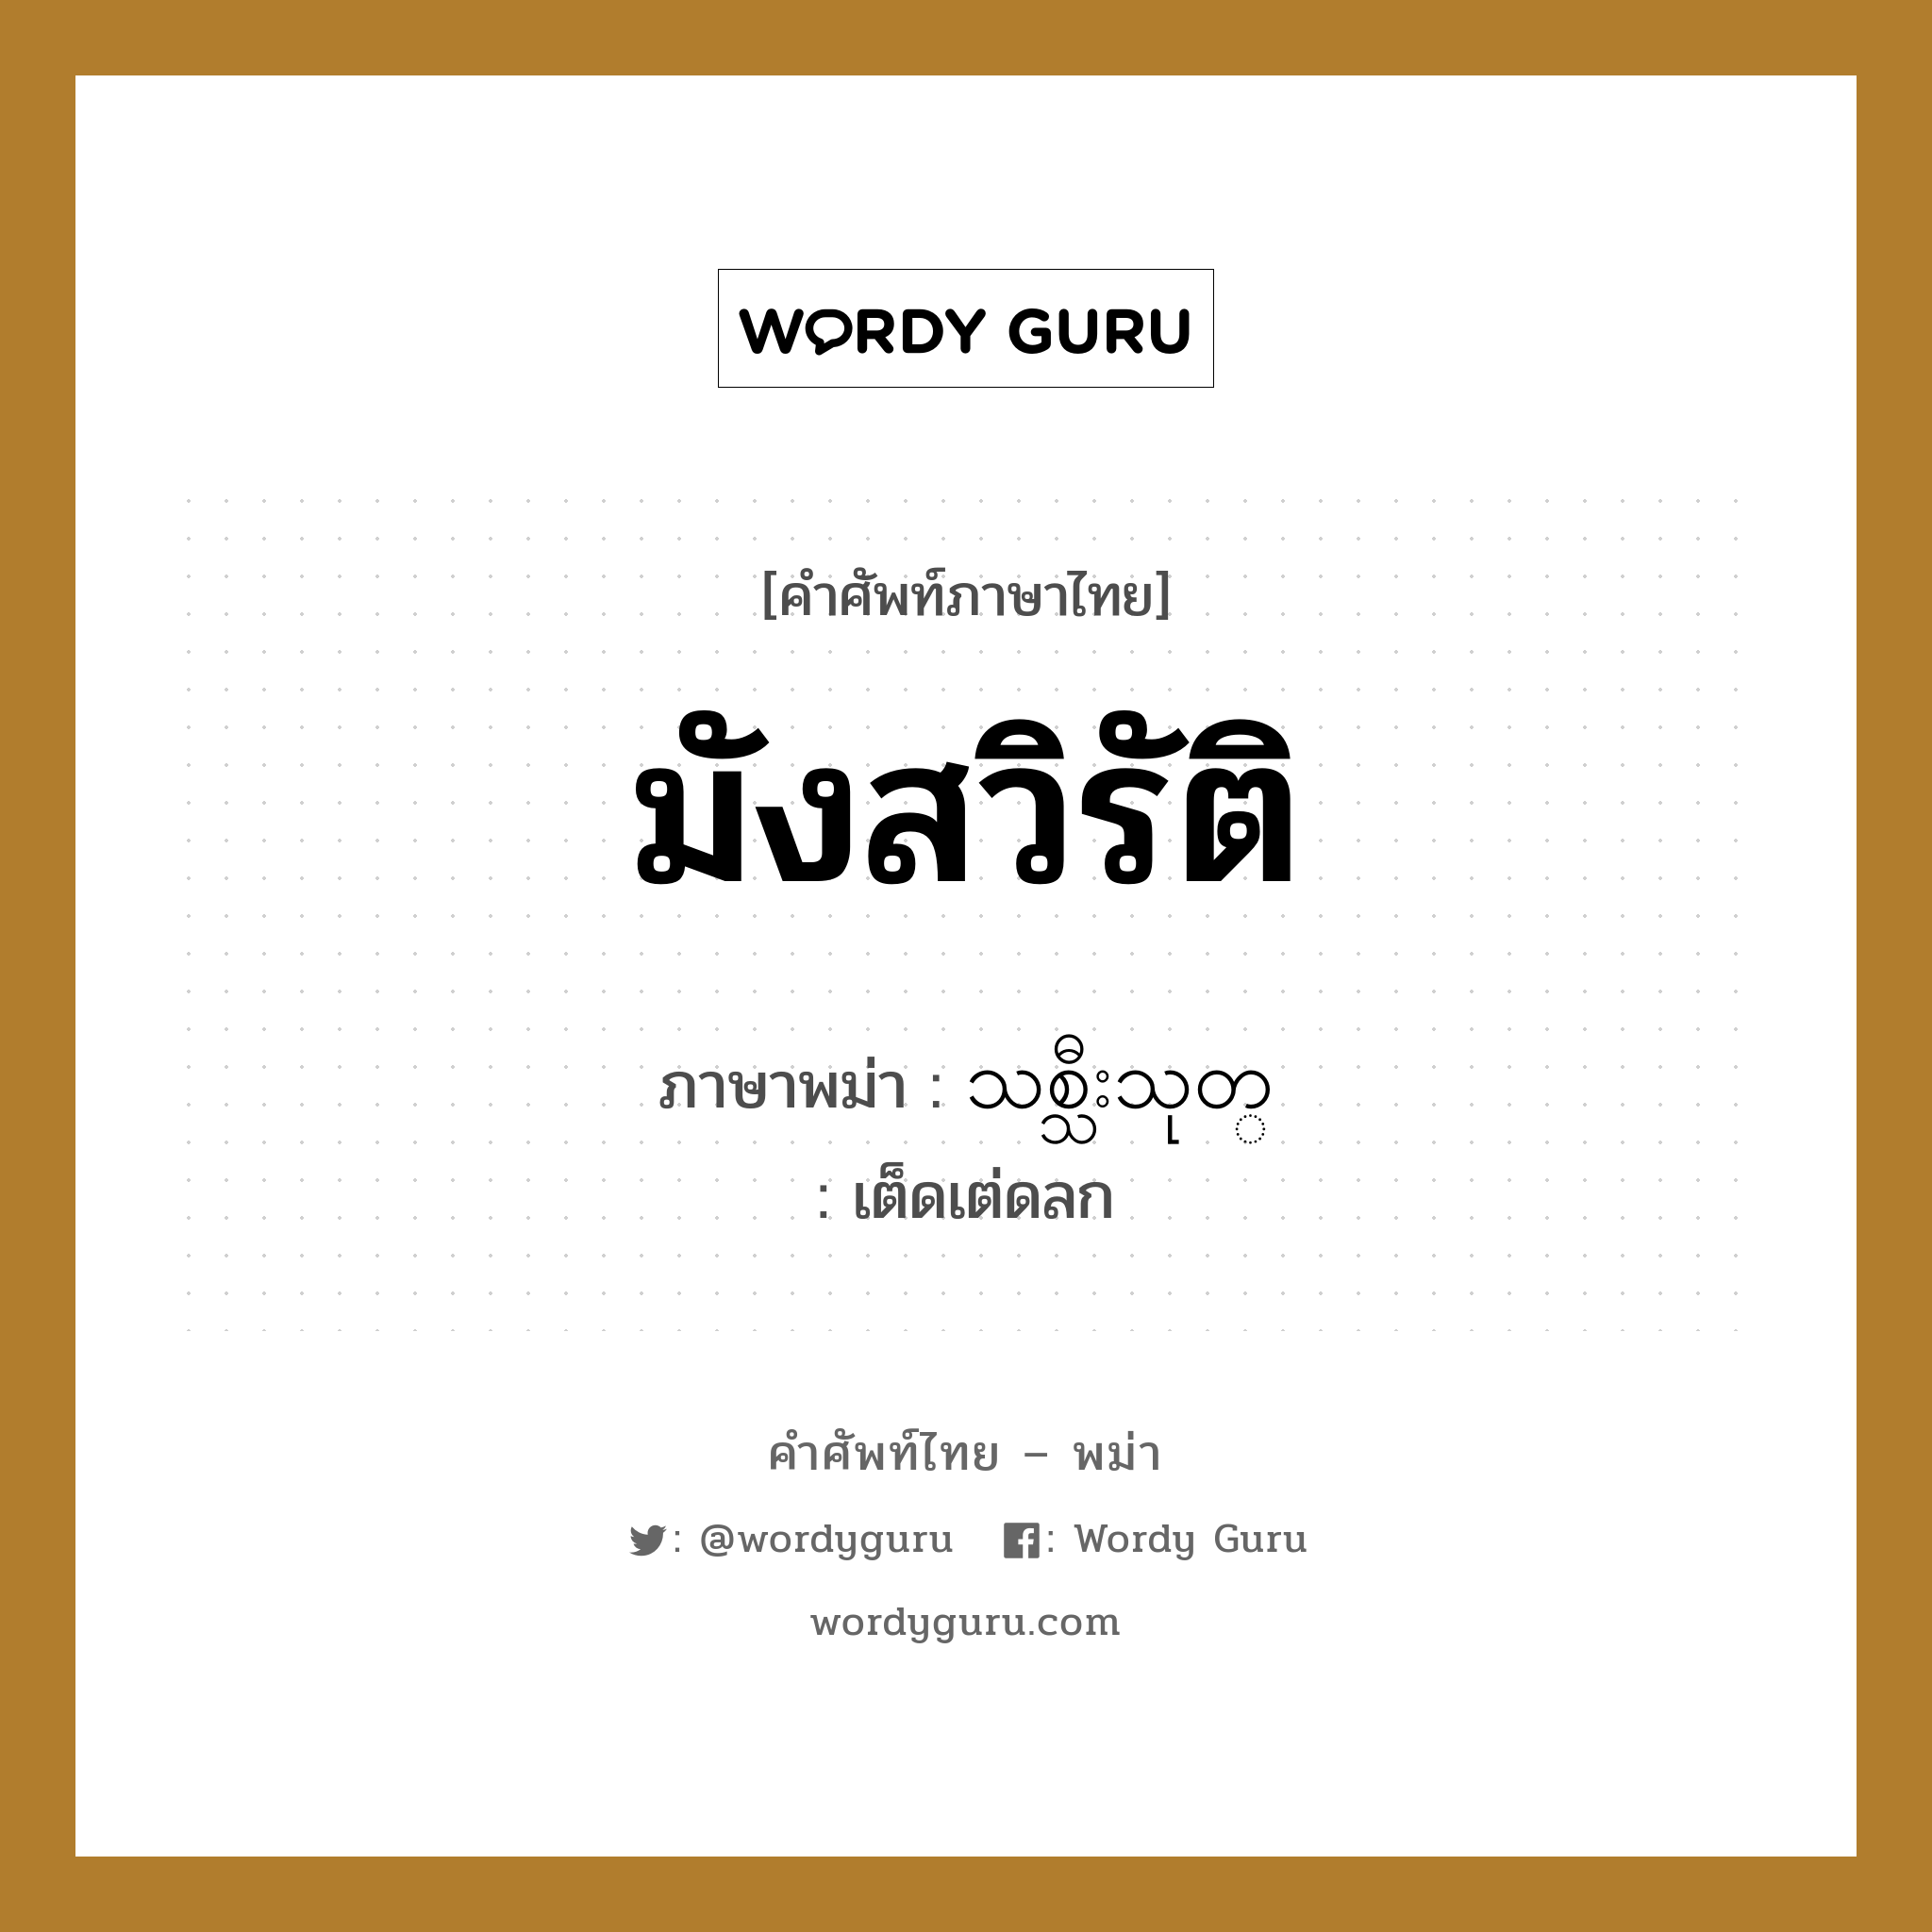 มังสวิรัติ ภาษาพม่าคืออะไร, คำศัพท์ภาษาไทย - พม่า มังสวิรัติ ภาษาพม่า သစ္သီးသုတ္ หมวด หมวดอาหาร เต็ดเต่ดลก หมวด หมวดอาหาร